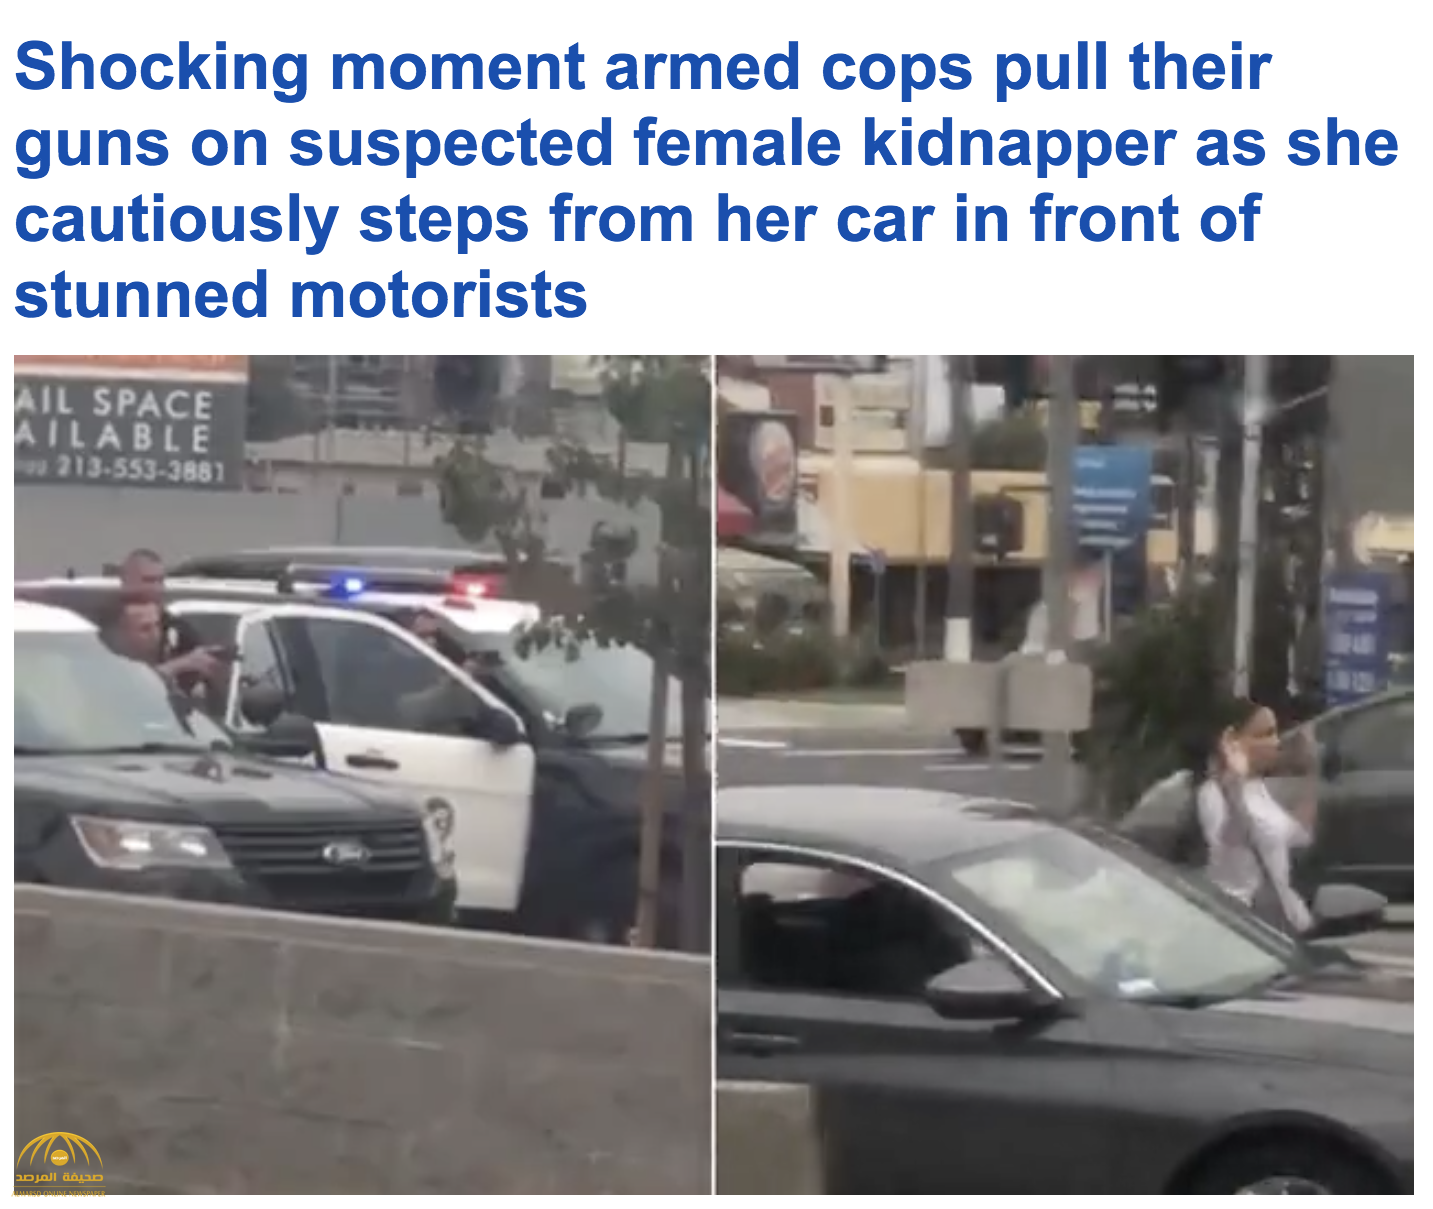 بالفيديو : شاهد 5 ضباط أمريكيون يوجهون أسلحتهم نحو سيدة سوداء في كاليفورنيا!